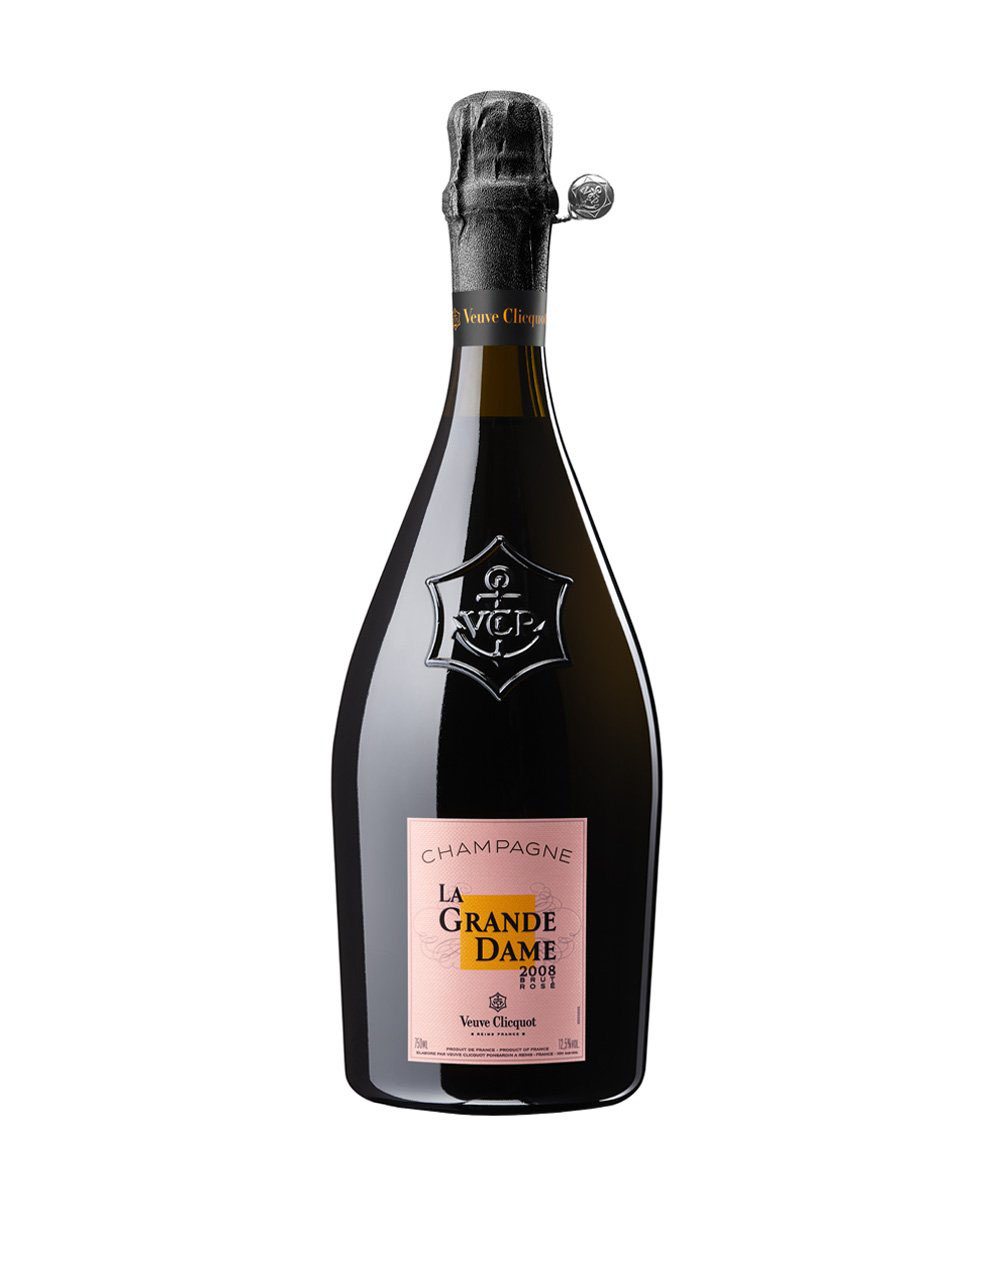 Sandara Premium Rose Champagne